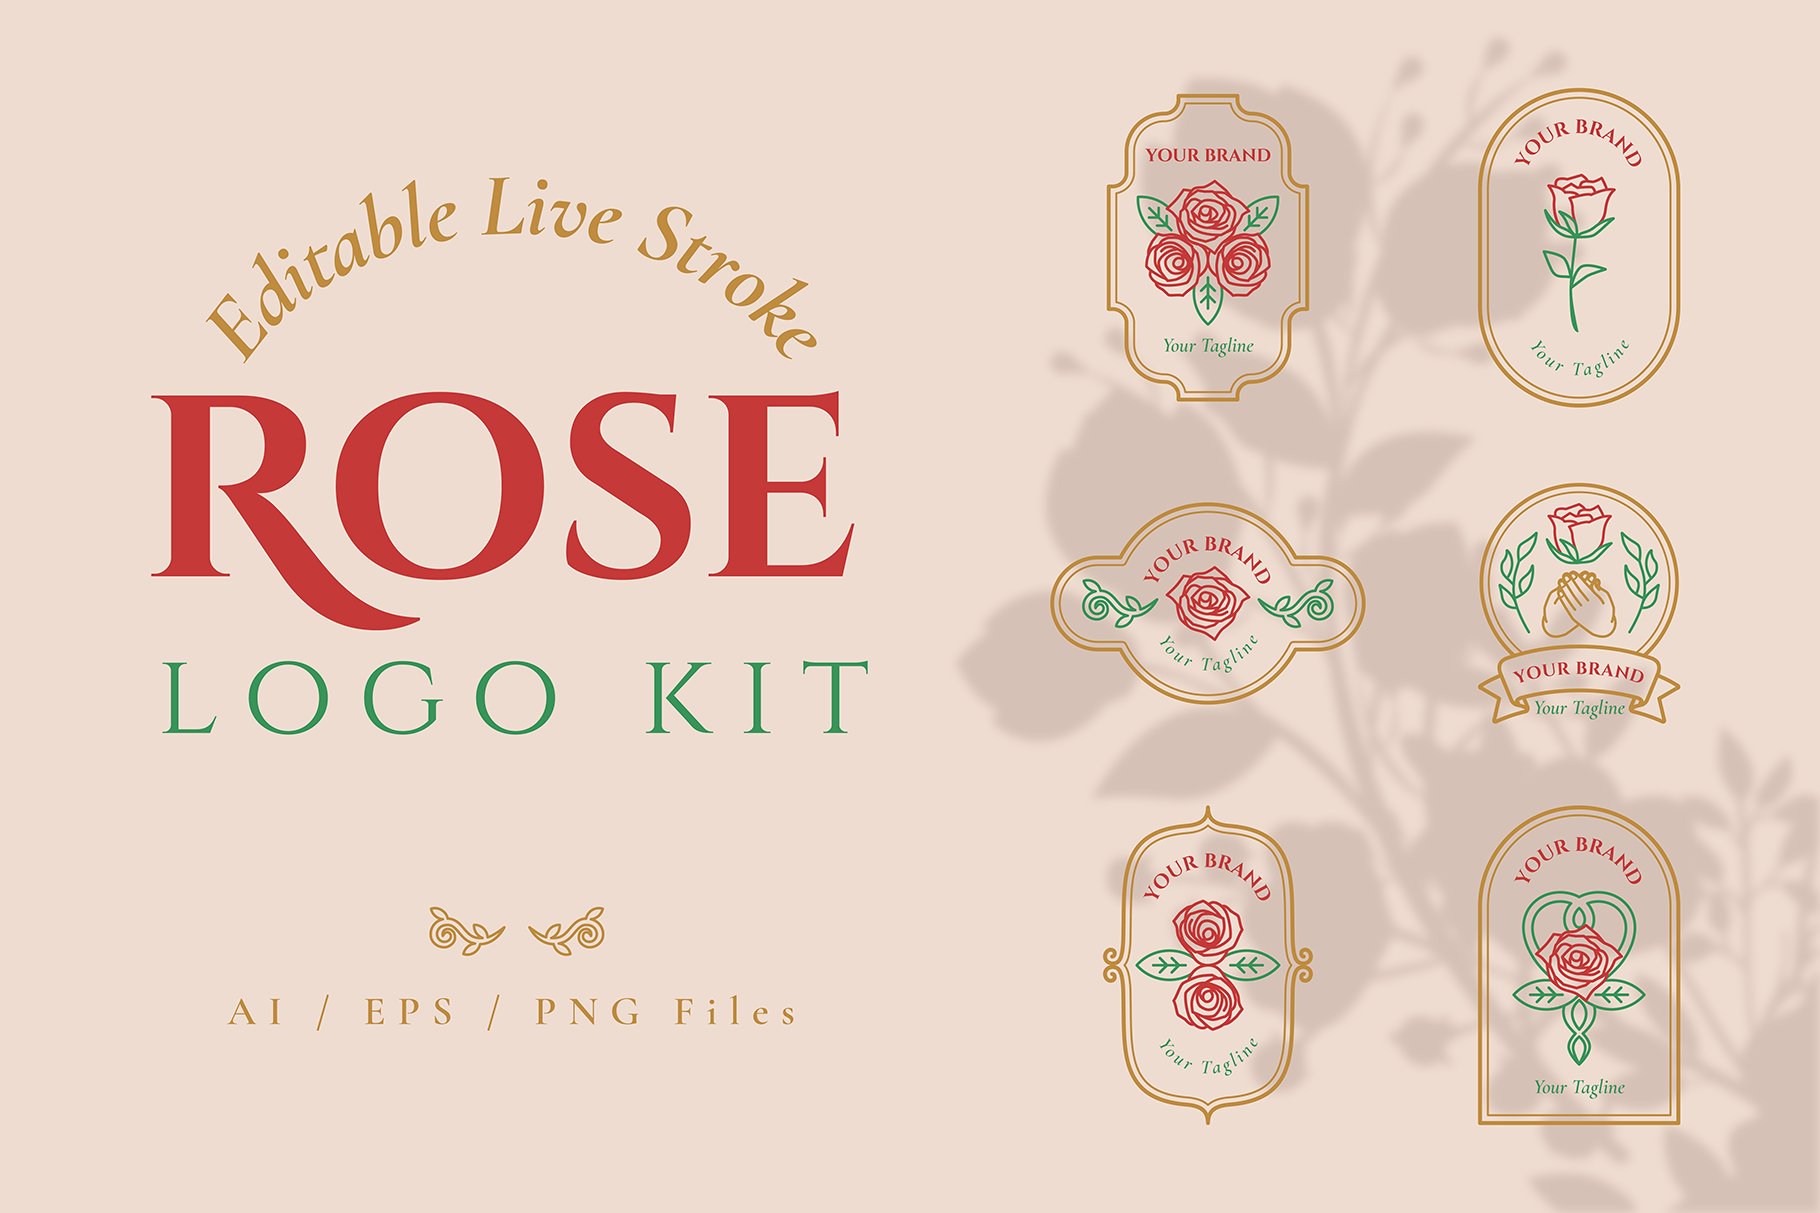 Rose Flower Logo Kit Template cover image.